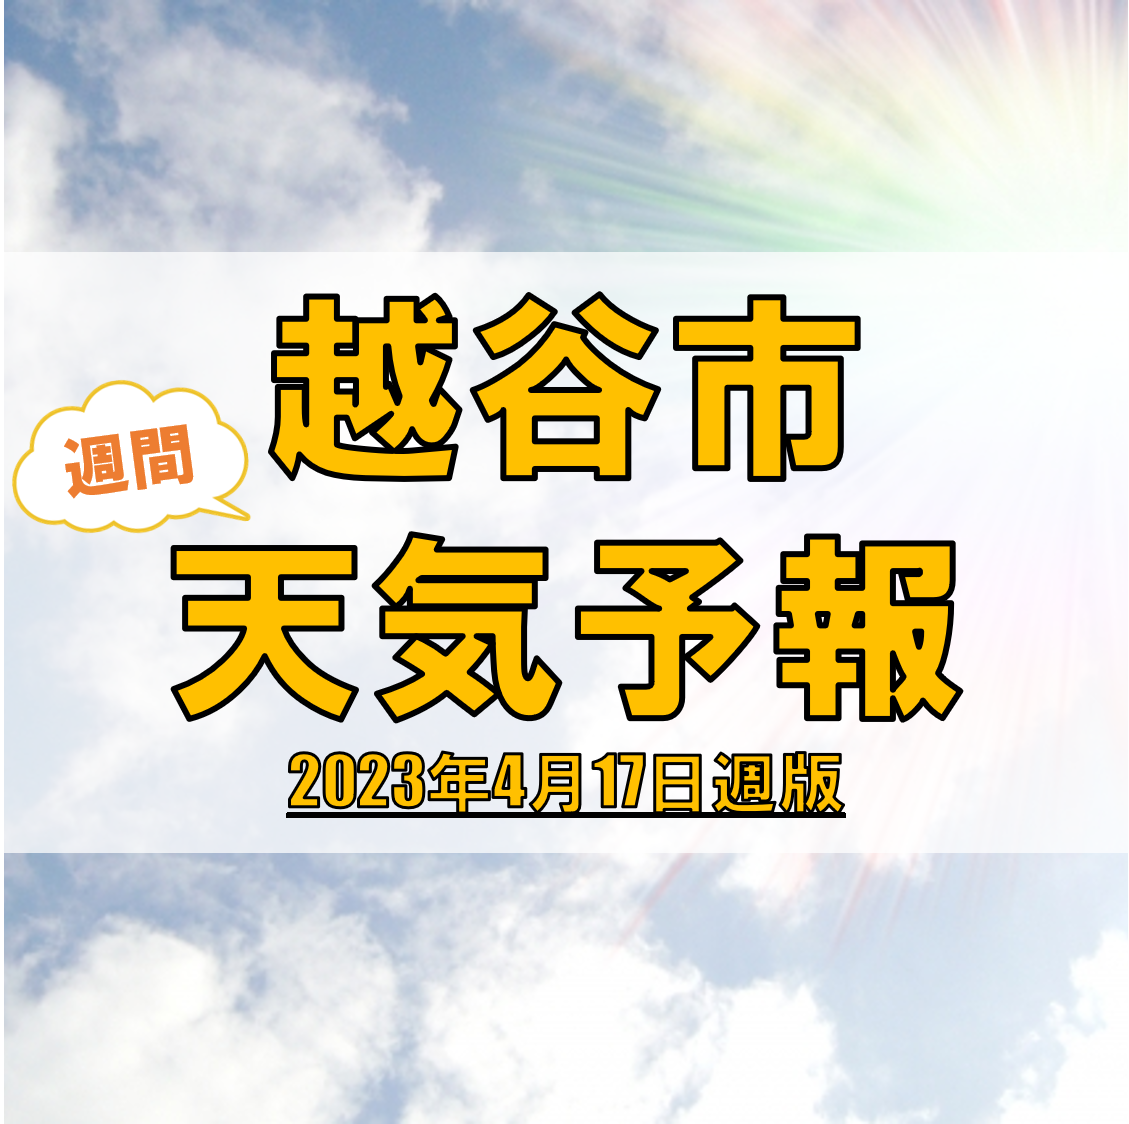 越谷市の天気 週間予報【2023年4月17日週】